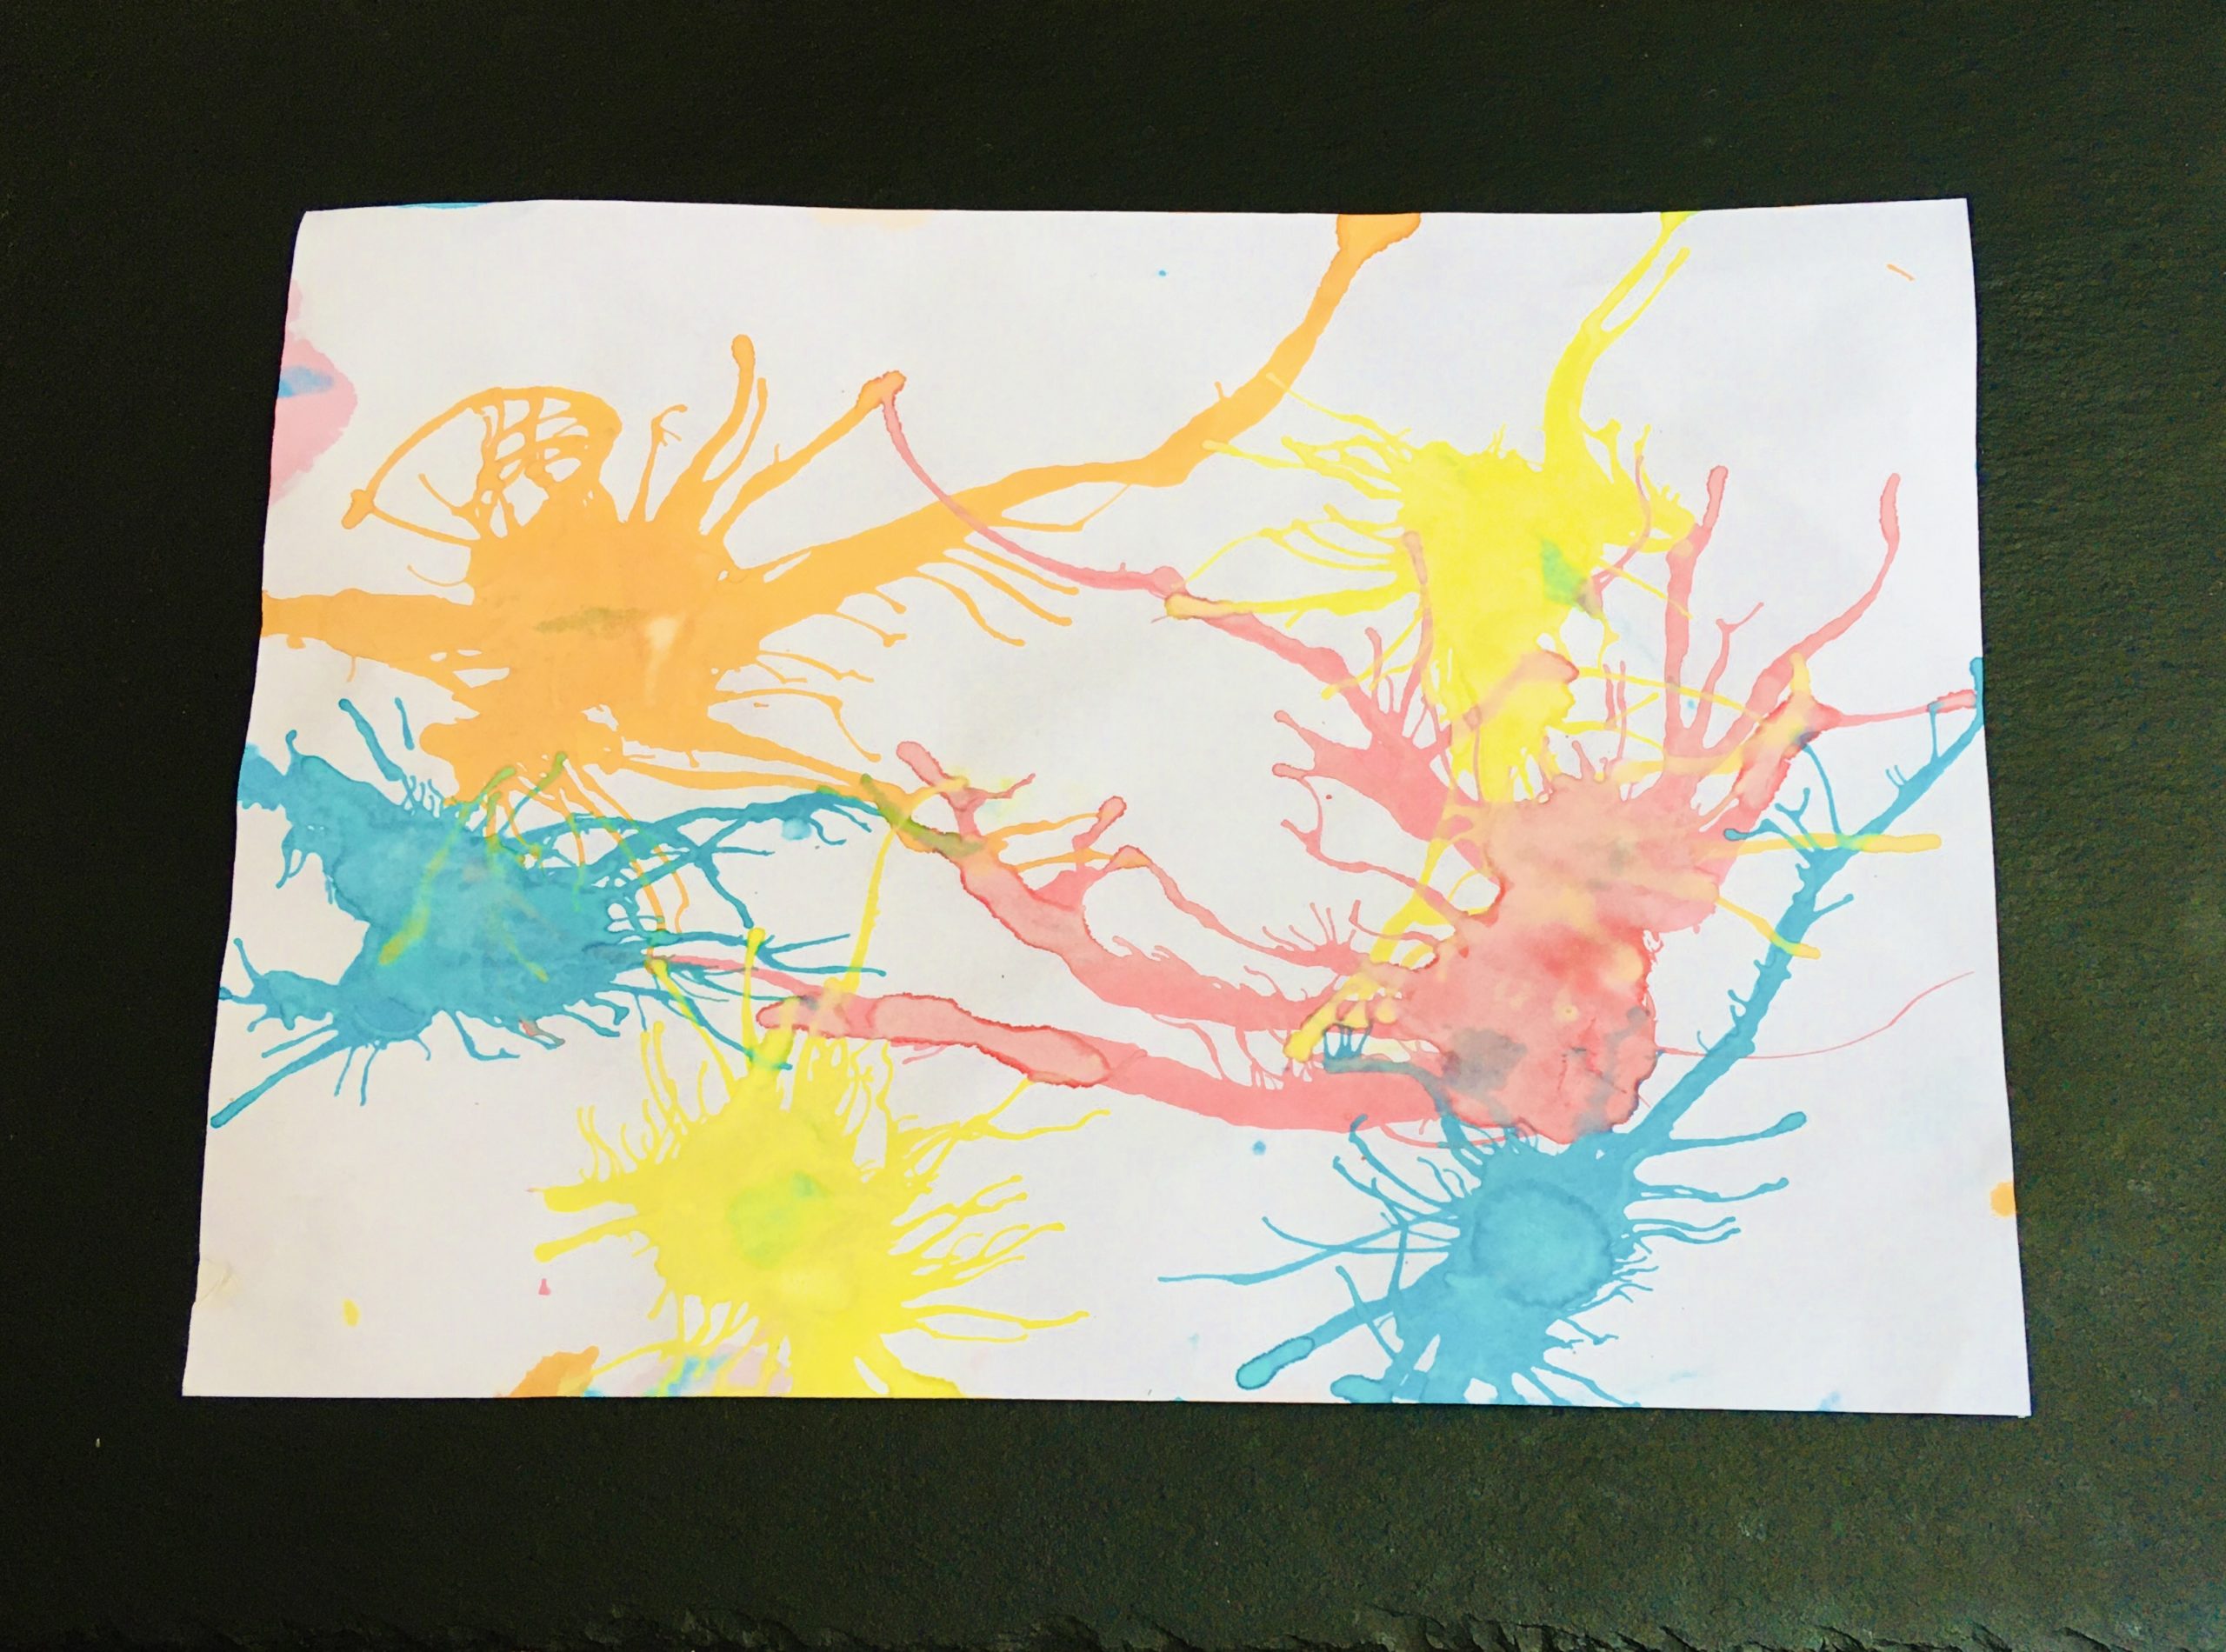 Bild zum Schritt 3 für die Kinder-Beschäftigung: 'Die Kinder können so einfache bunte Farbbilder zaubern.'